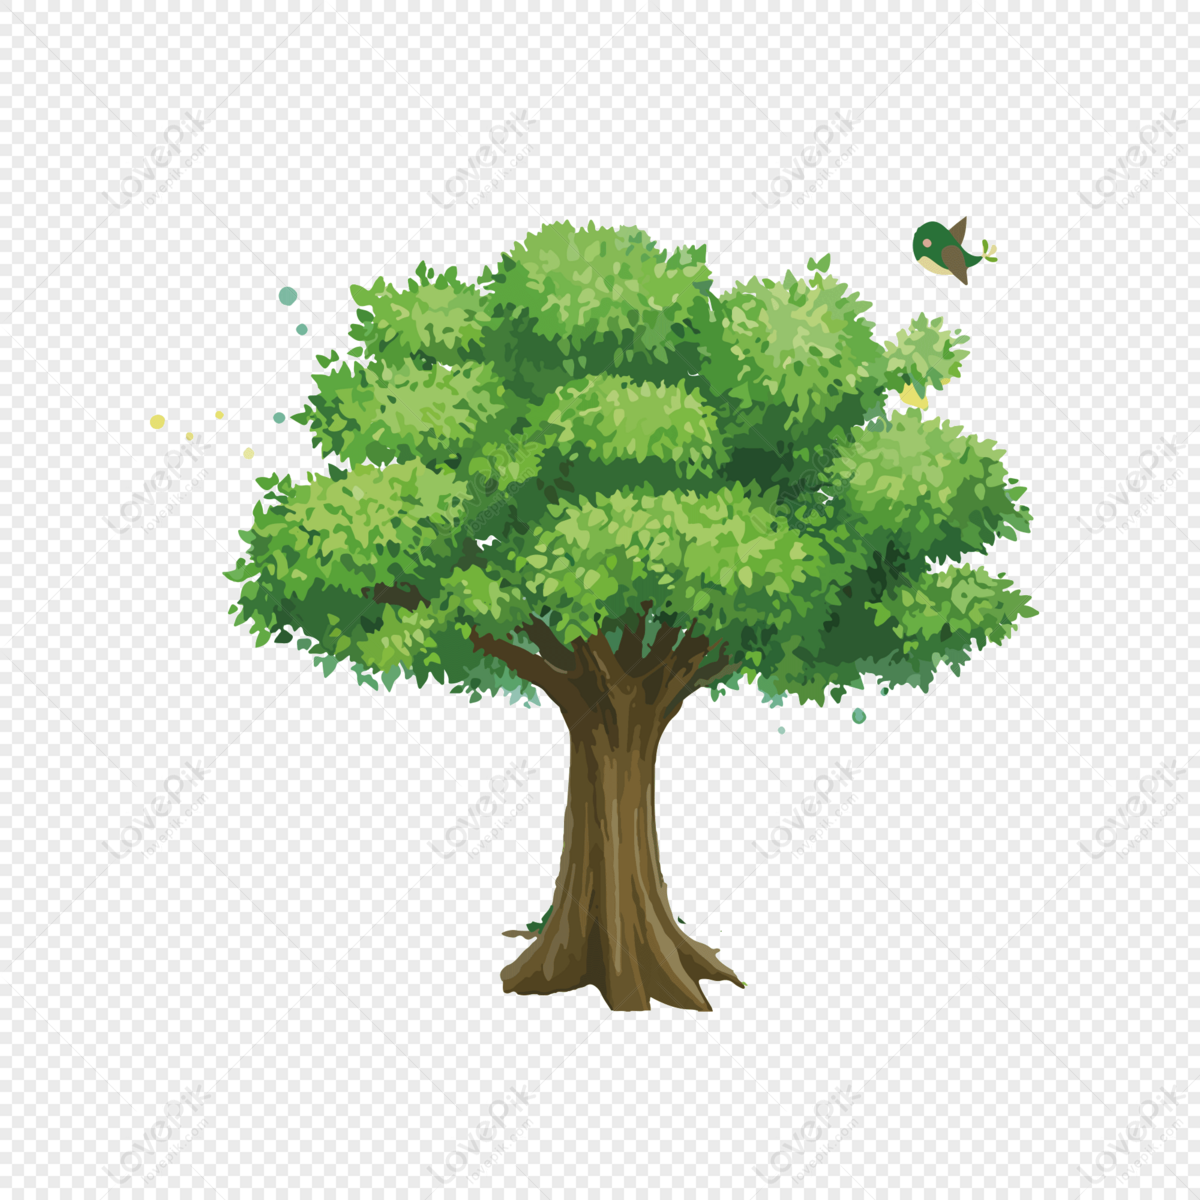 Bộ Sưu Tập hình cây Cực Chất Full 4K với hơn 999+ hình cái cây